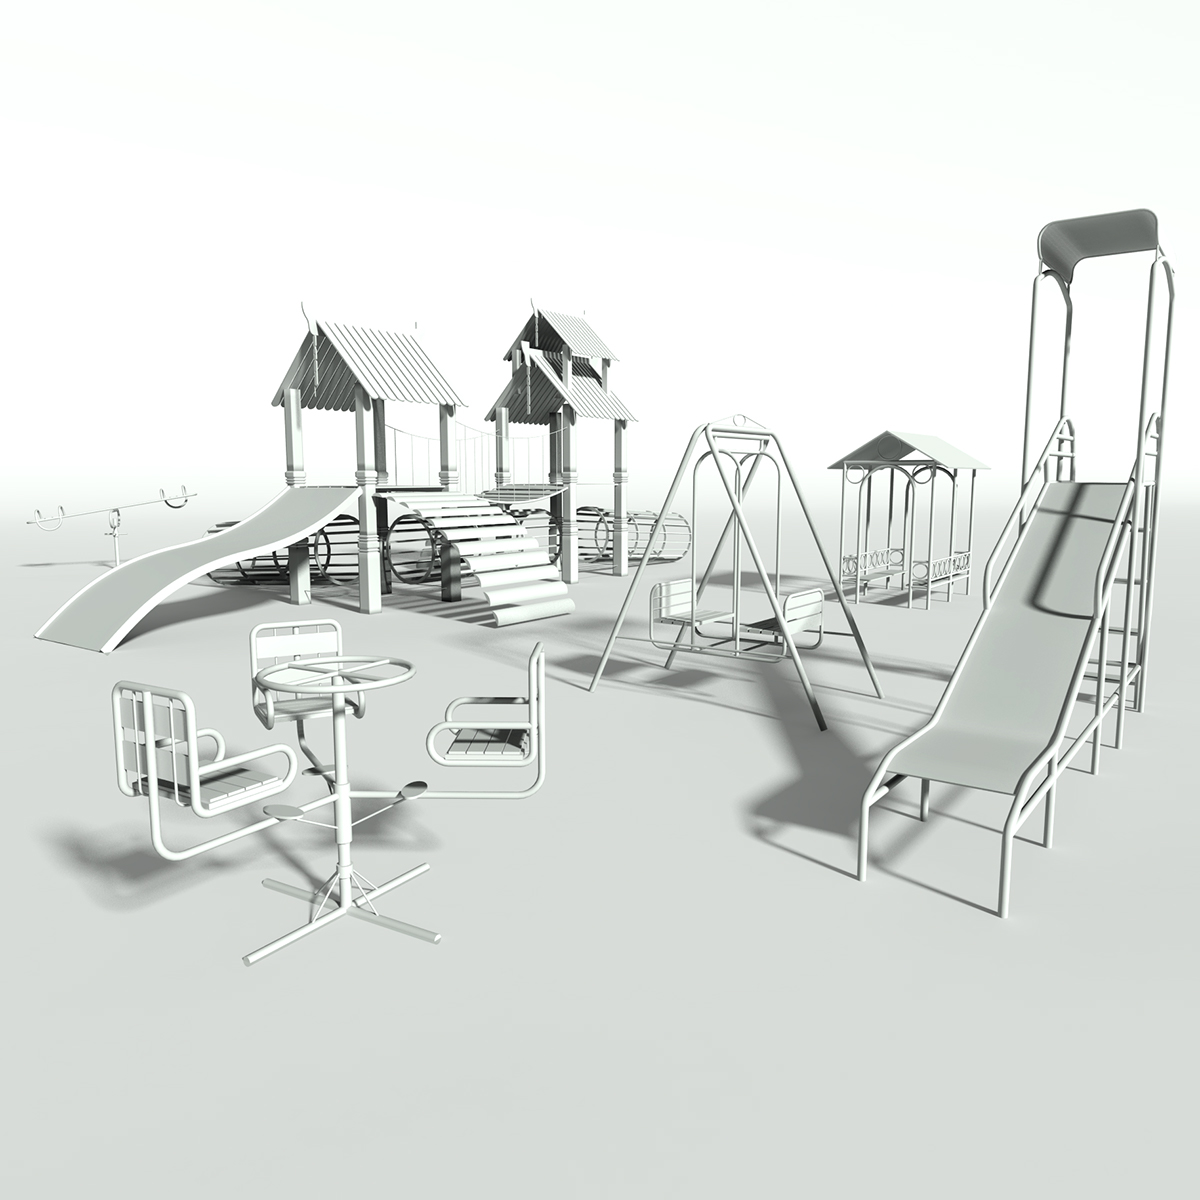 3D Studio Max modeling rendering Materiale per cataloghi Oggetti di Design mies der rohe Sedia Barcellona